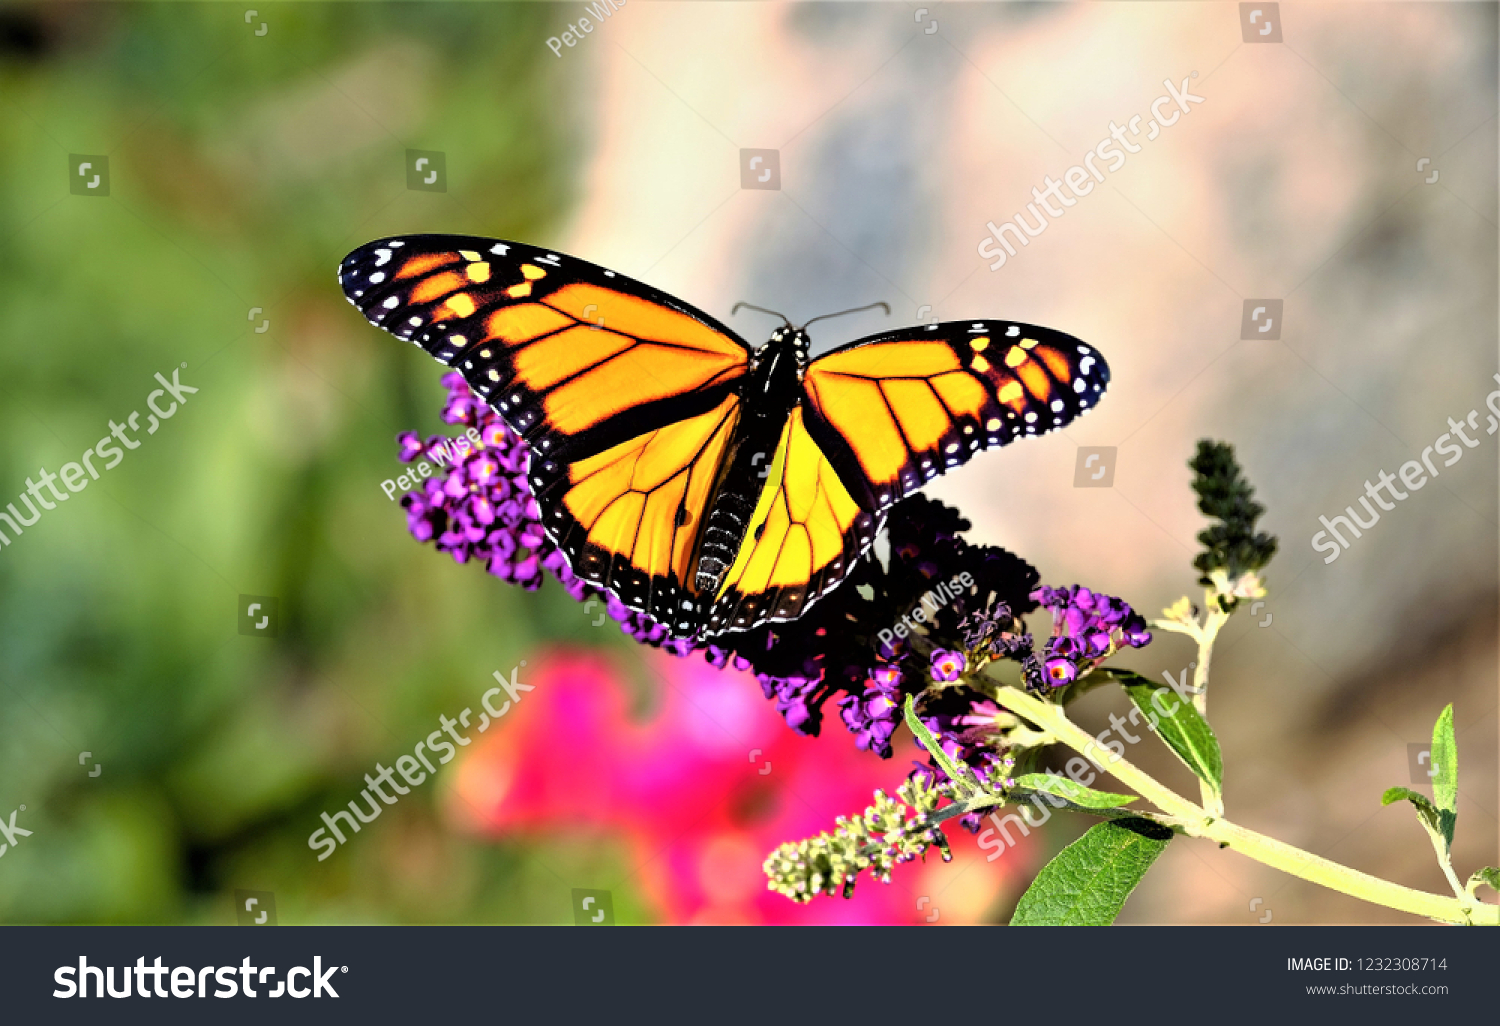 Monarch butterfly on flower #1232308714